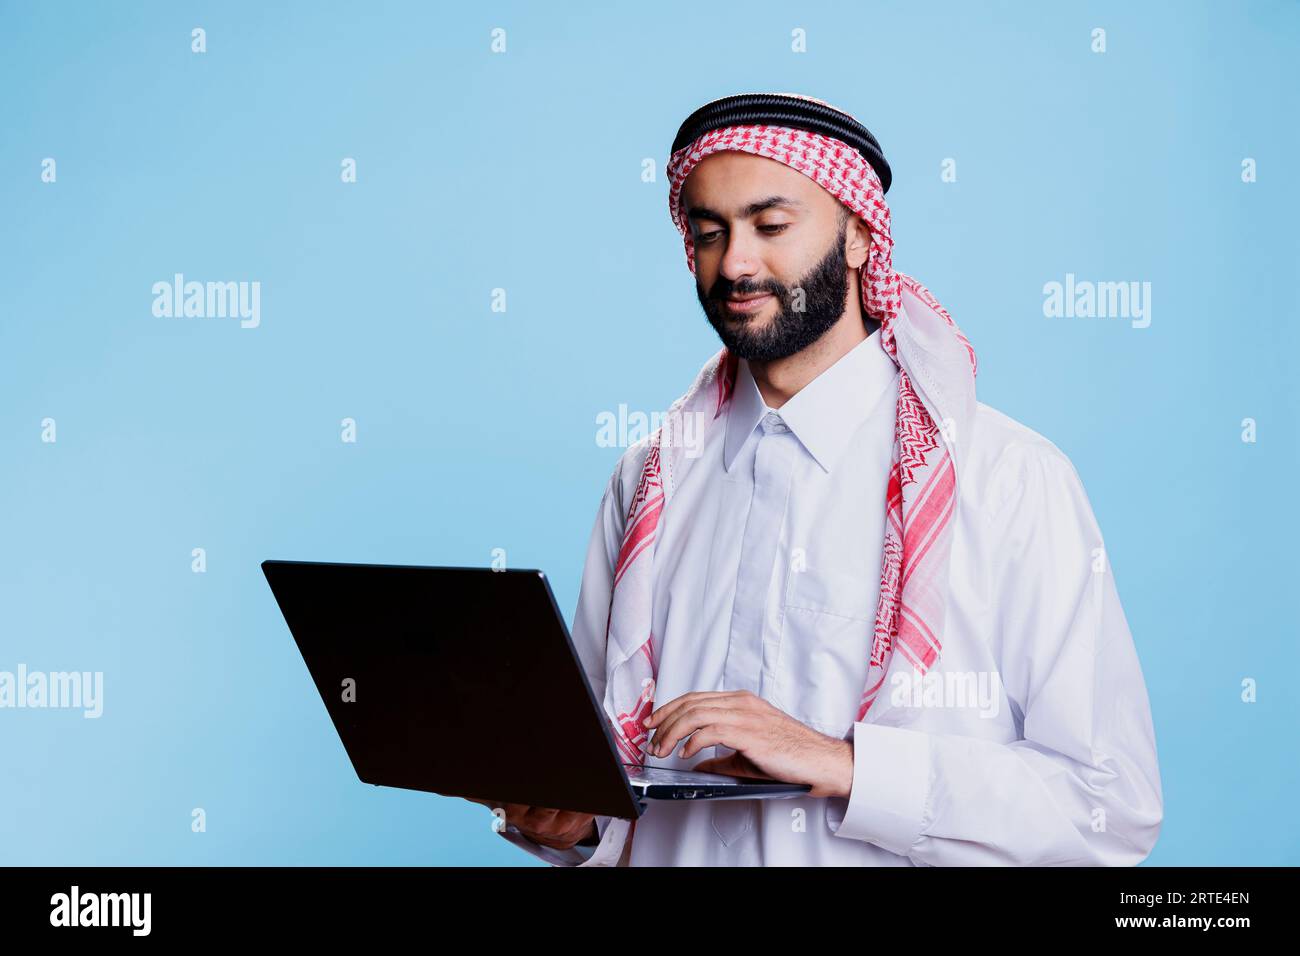 Uomo musulmano che indossa una stoffa tradizionale e un foulard ghutra che regge un laptop e un social media. Persona araba vestita con abiti islamici usando un computer portatile e controllando la pagina Internet Foto Stock